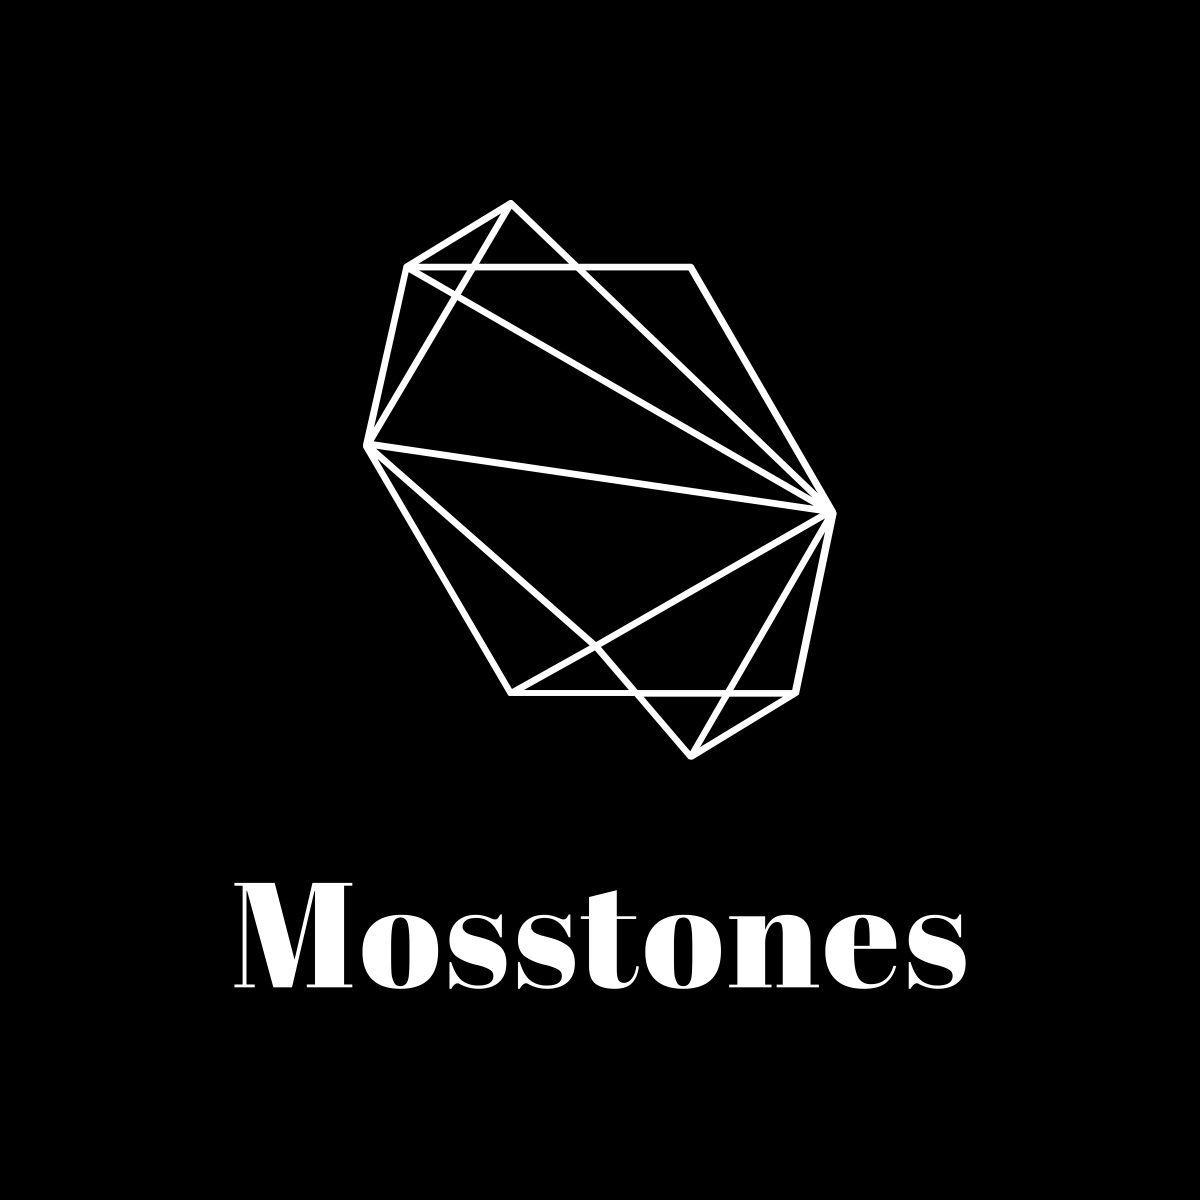 Mosstones